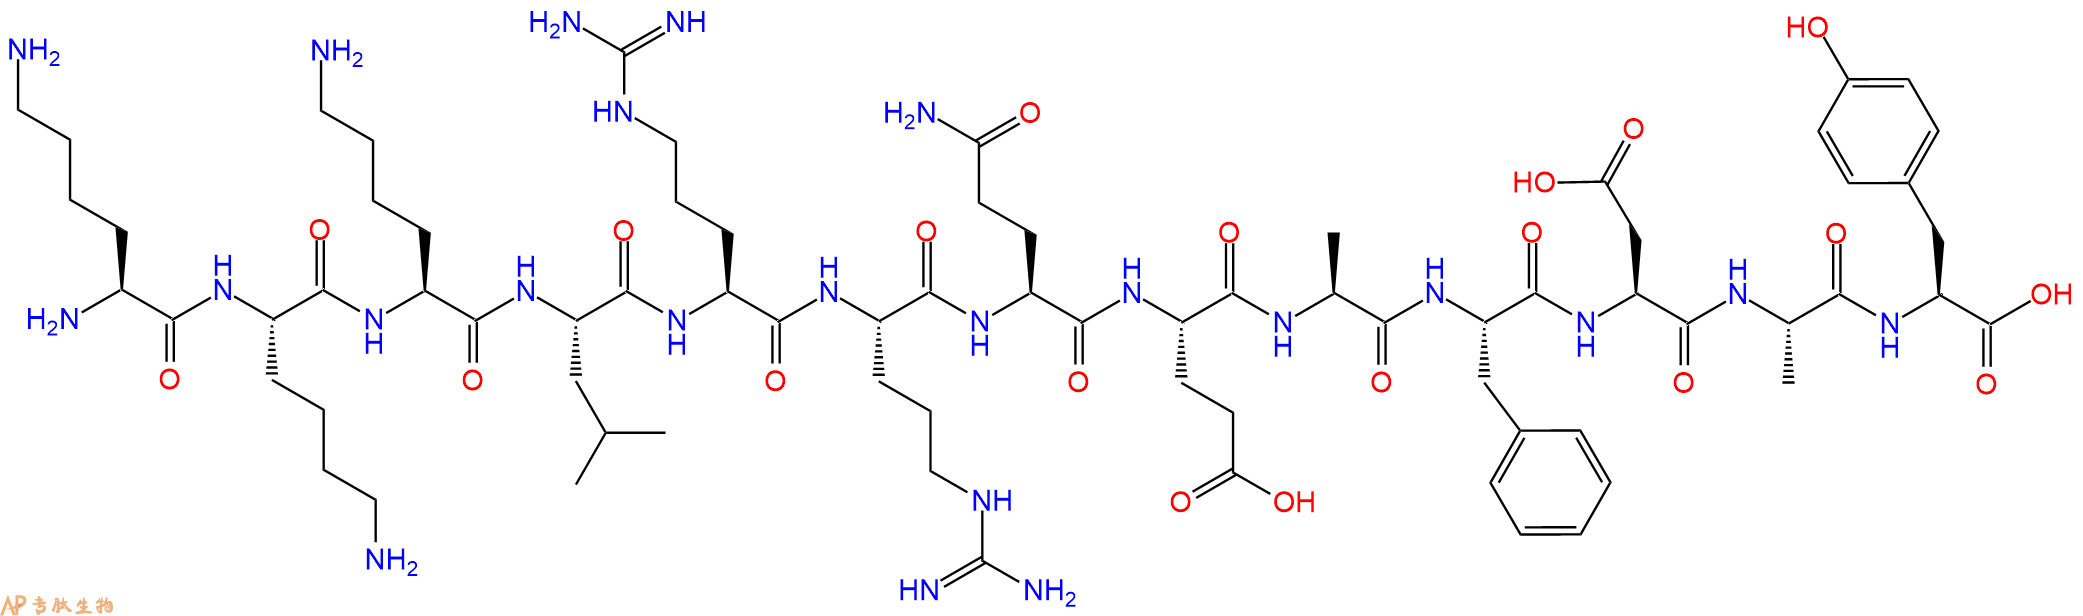 专肽生物产品钙调蛋白激酶底物[Lys3, Phe10, Tyr13]-Autocamtide-2-Related